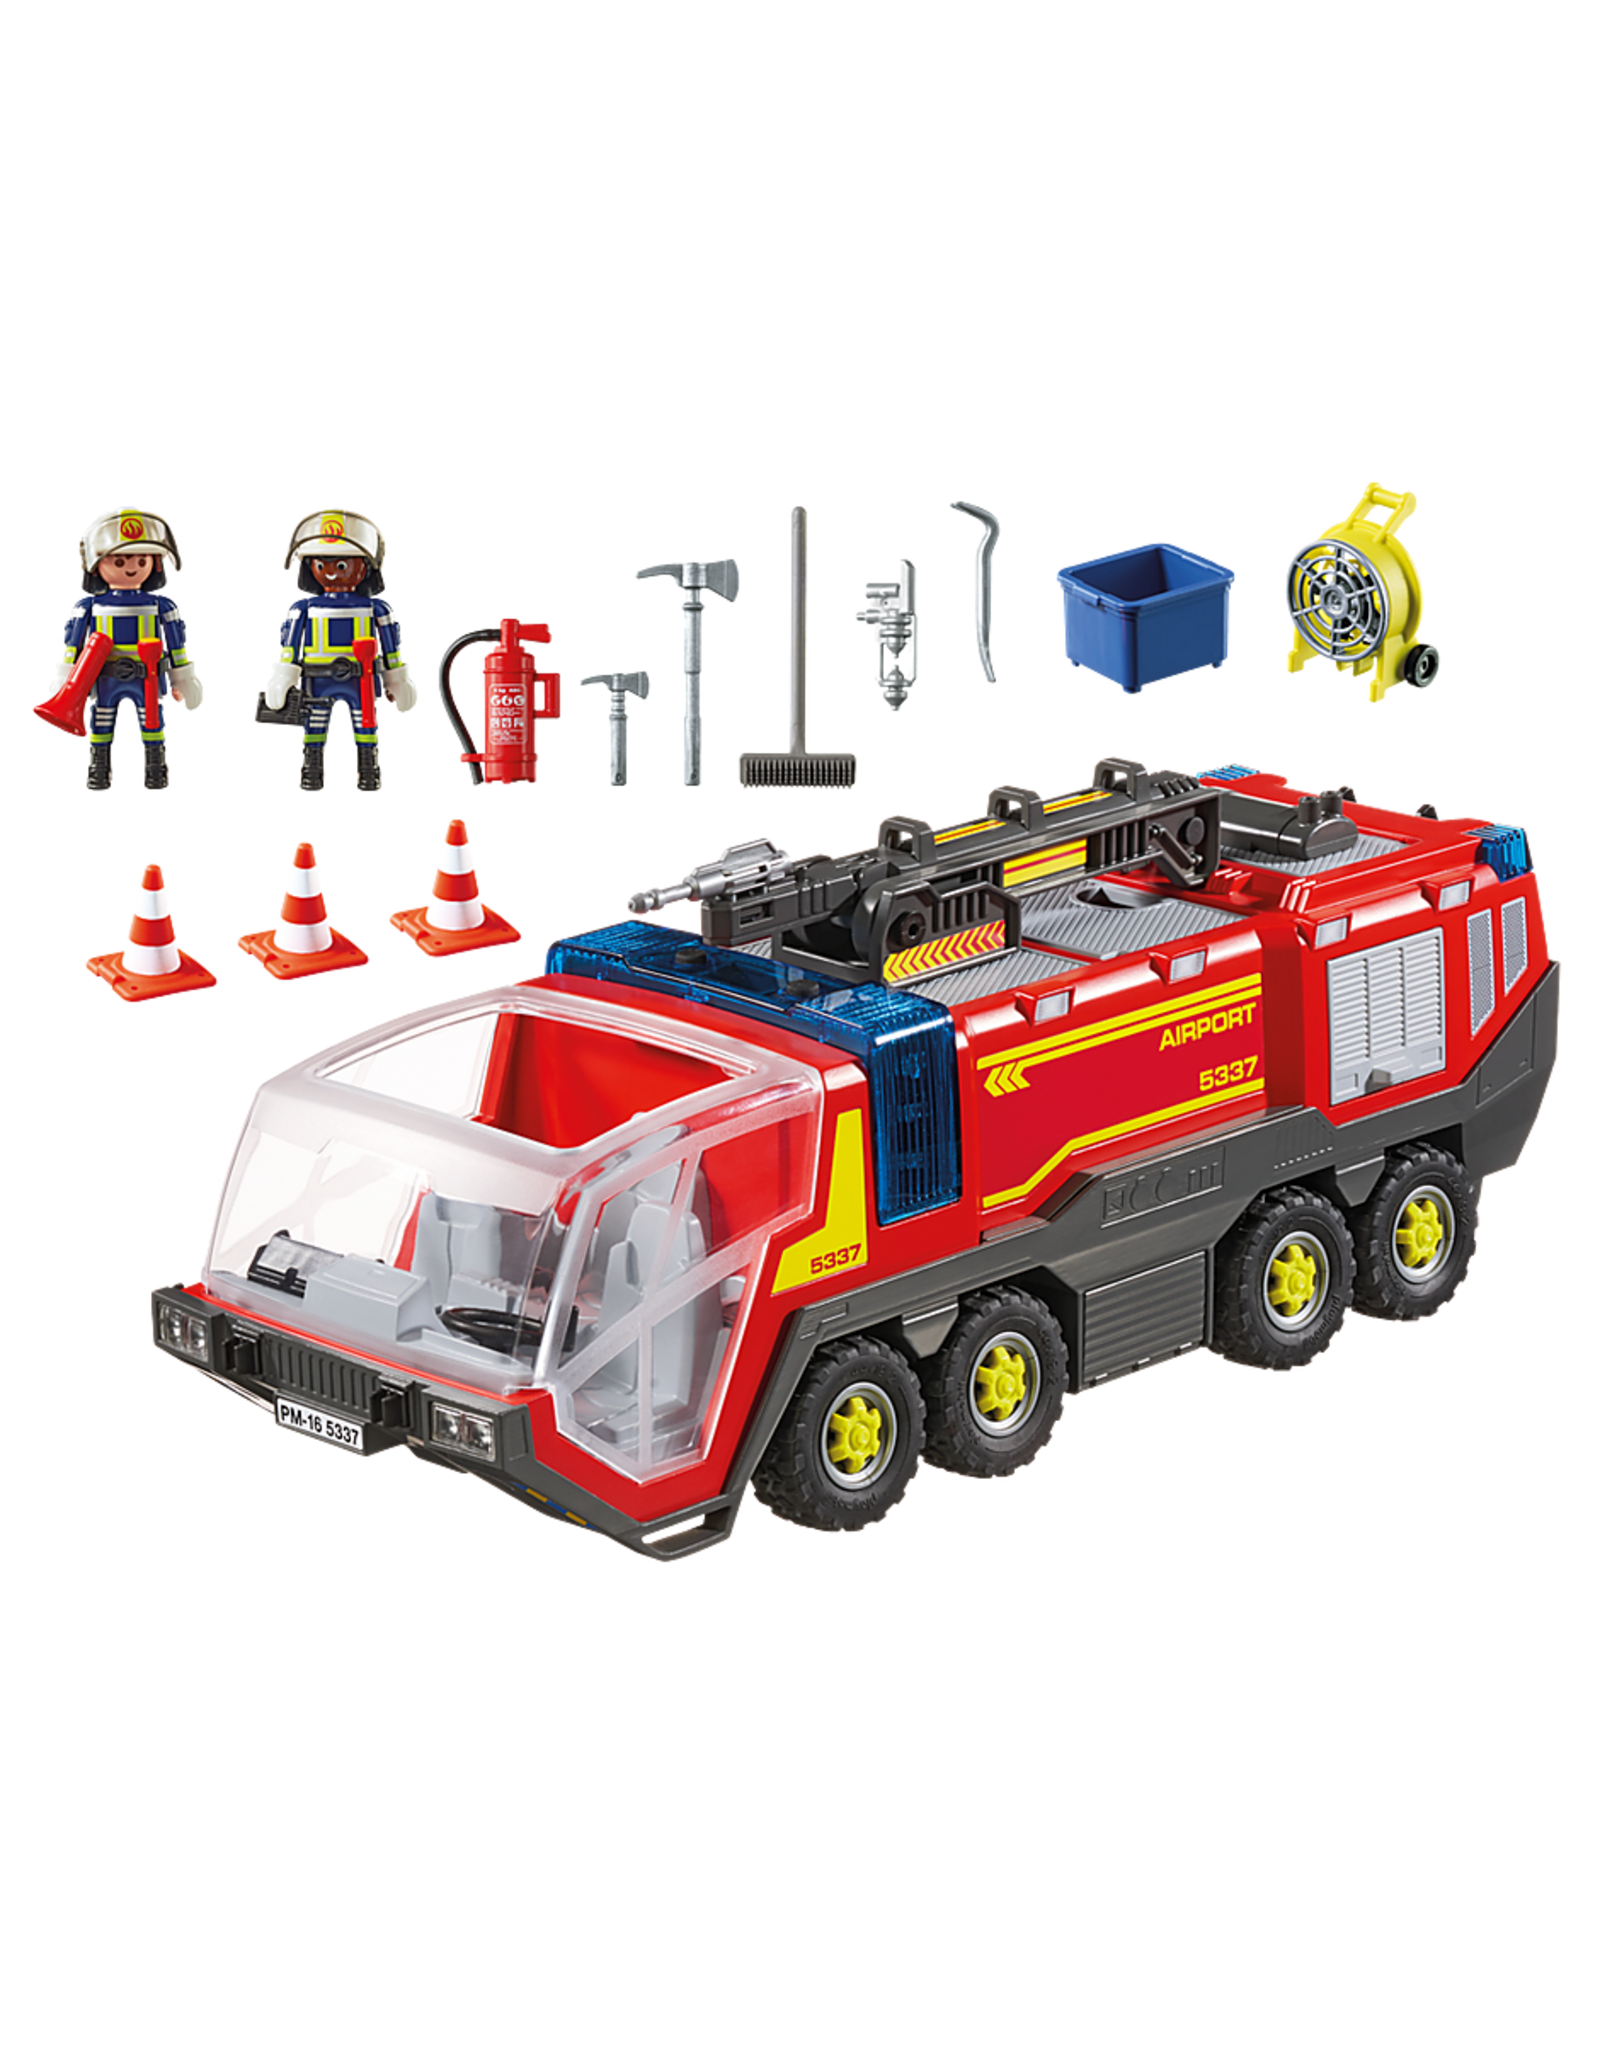 Playmobil Playmobil City Action 5337 Luchthavenbrandweer met Licht en Geluid